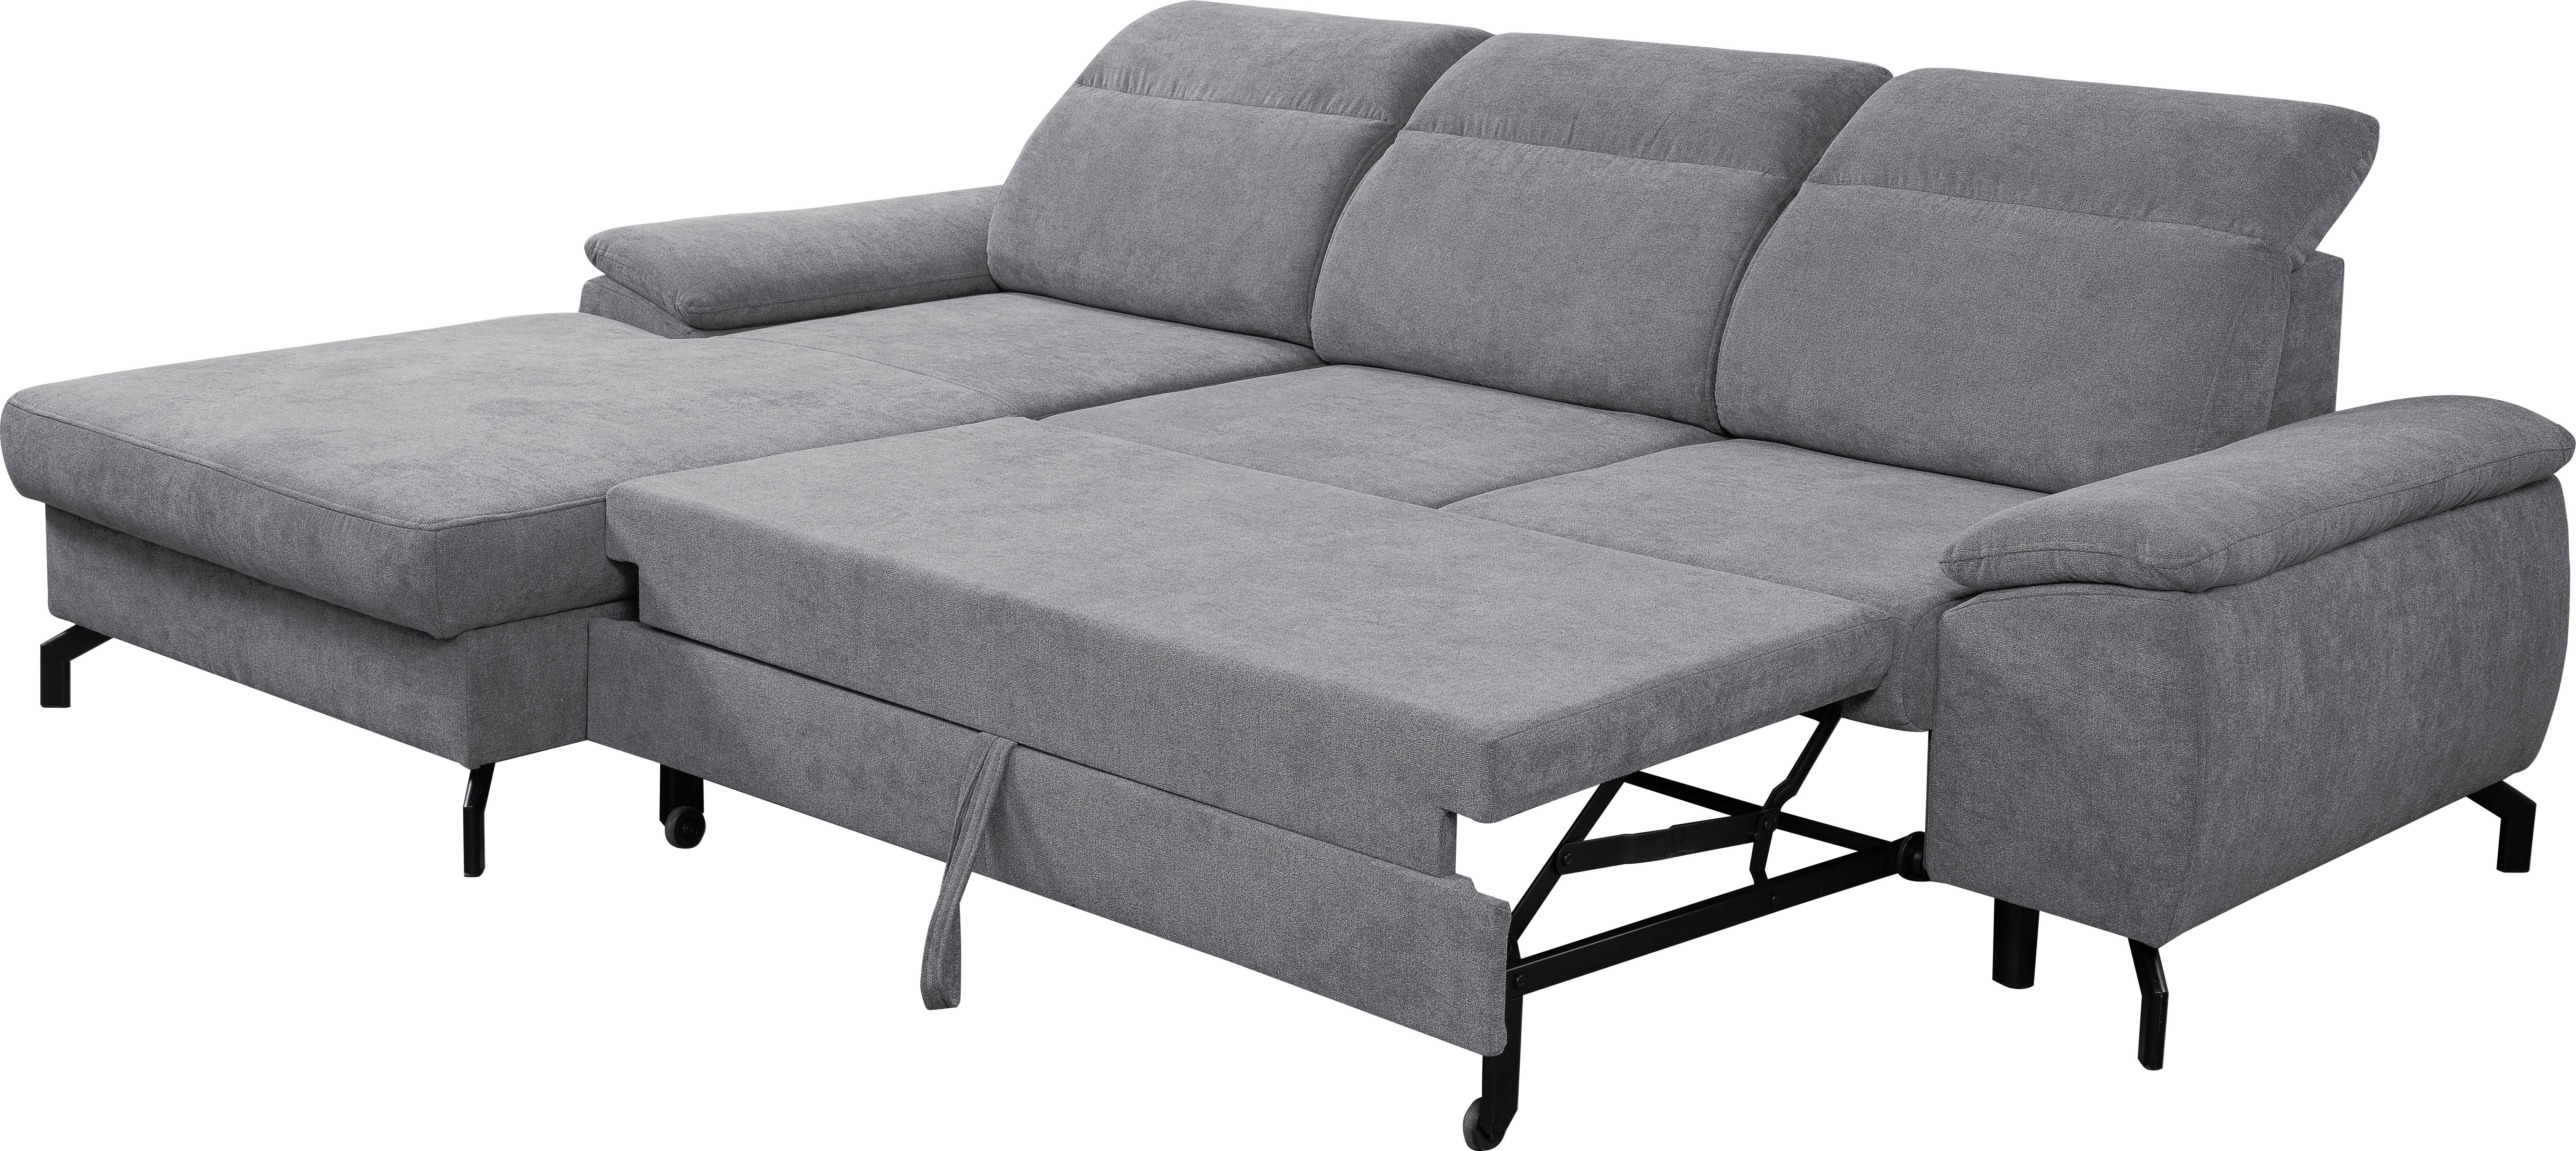 | Grau Sofa Bettkasten, Ecksofa WERK2 Grau | Panama, Kopfteile Schlaffunktion, verstellbar mit Modernes Grau